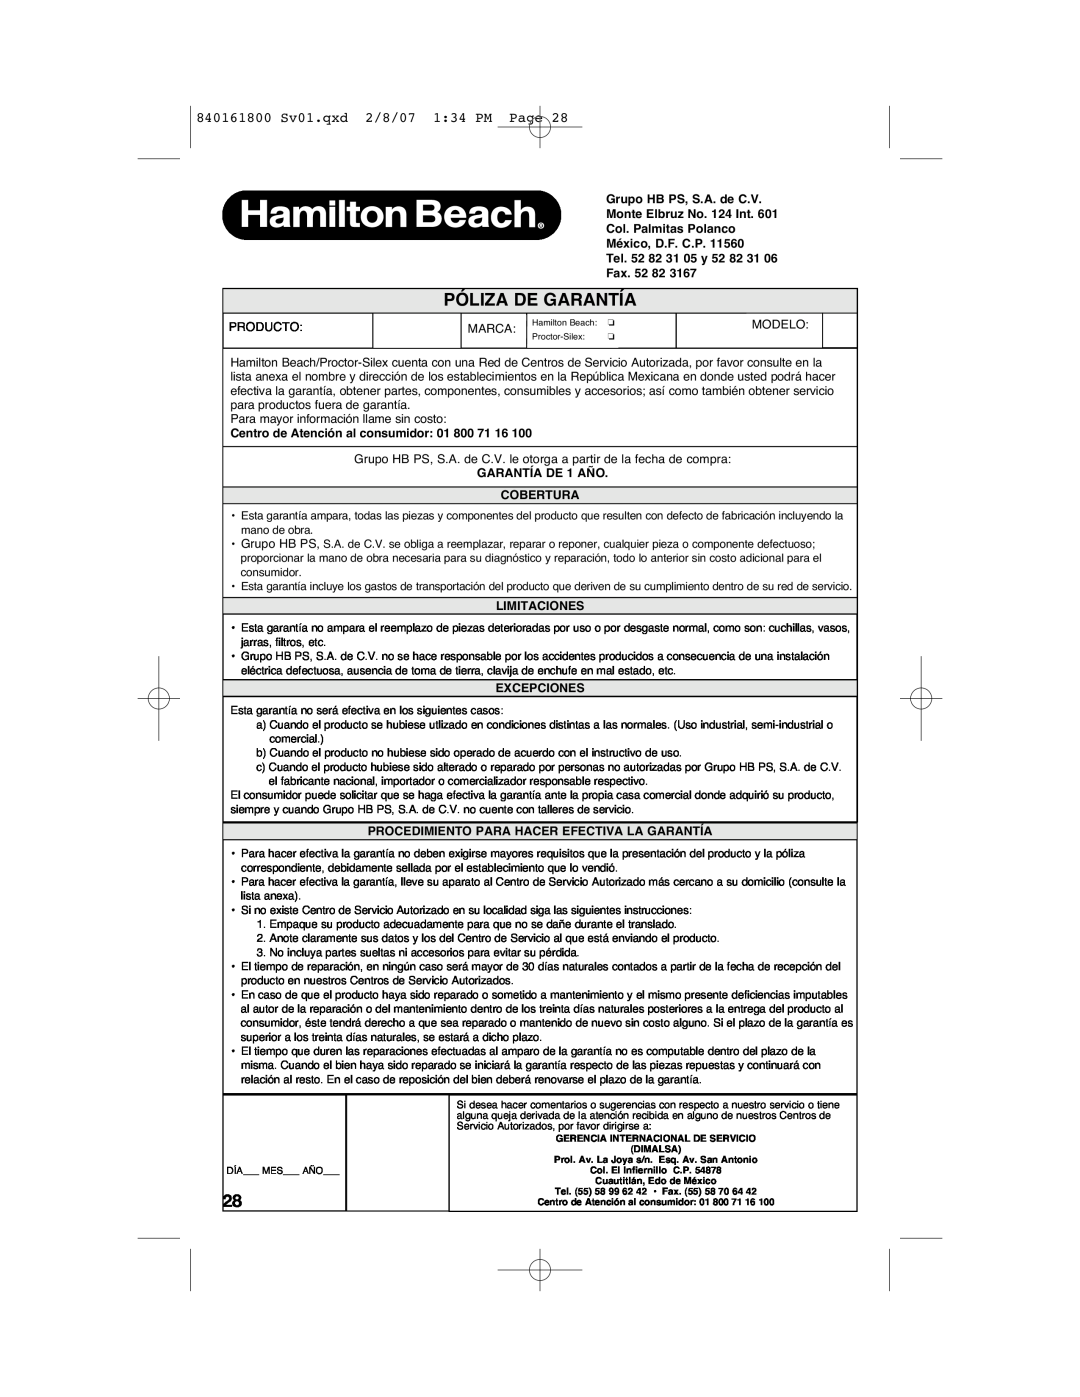 Hamilton Beach manual Póliza De Garantía, 840161800 Sv01.qxd 2/8/07 134 PM Page, Fax. 52 82, GARANTÍA DE 1 AÑO COBERTURA 